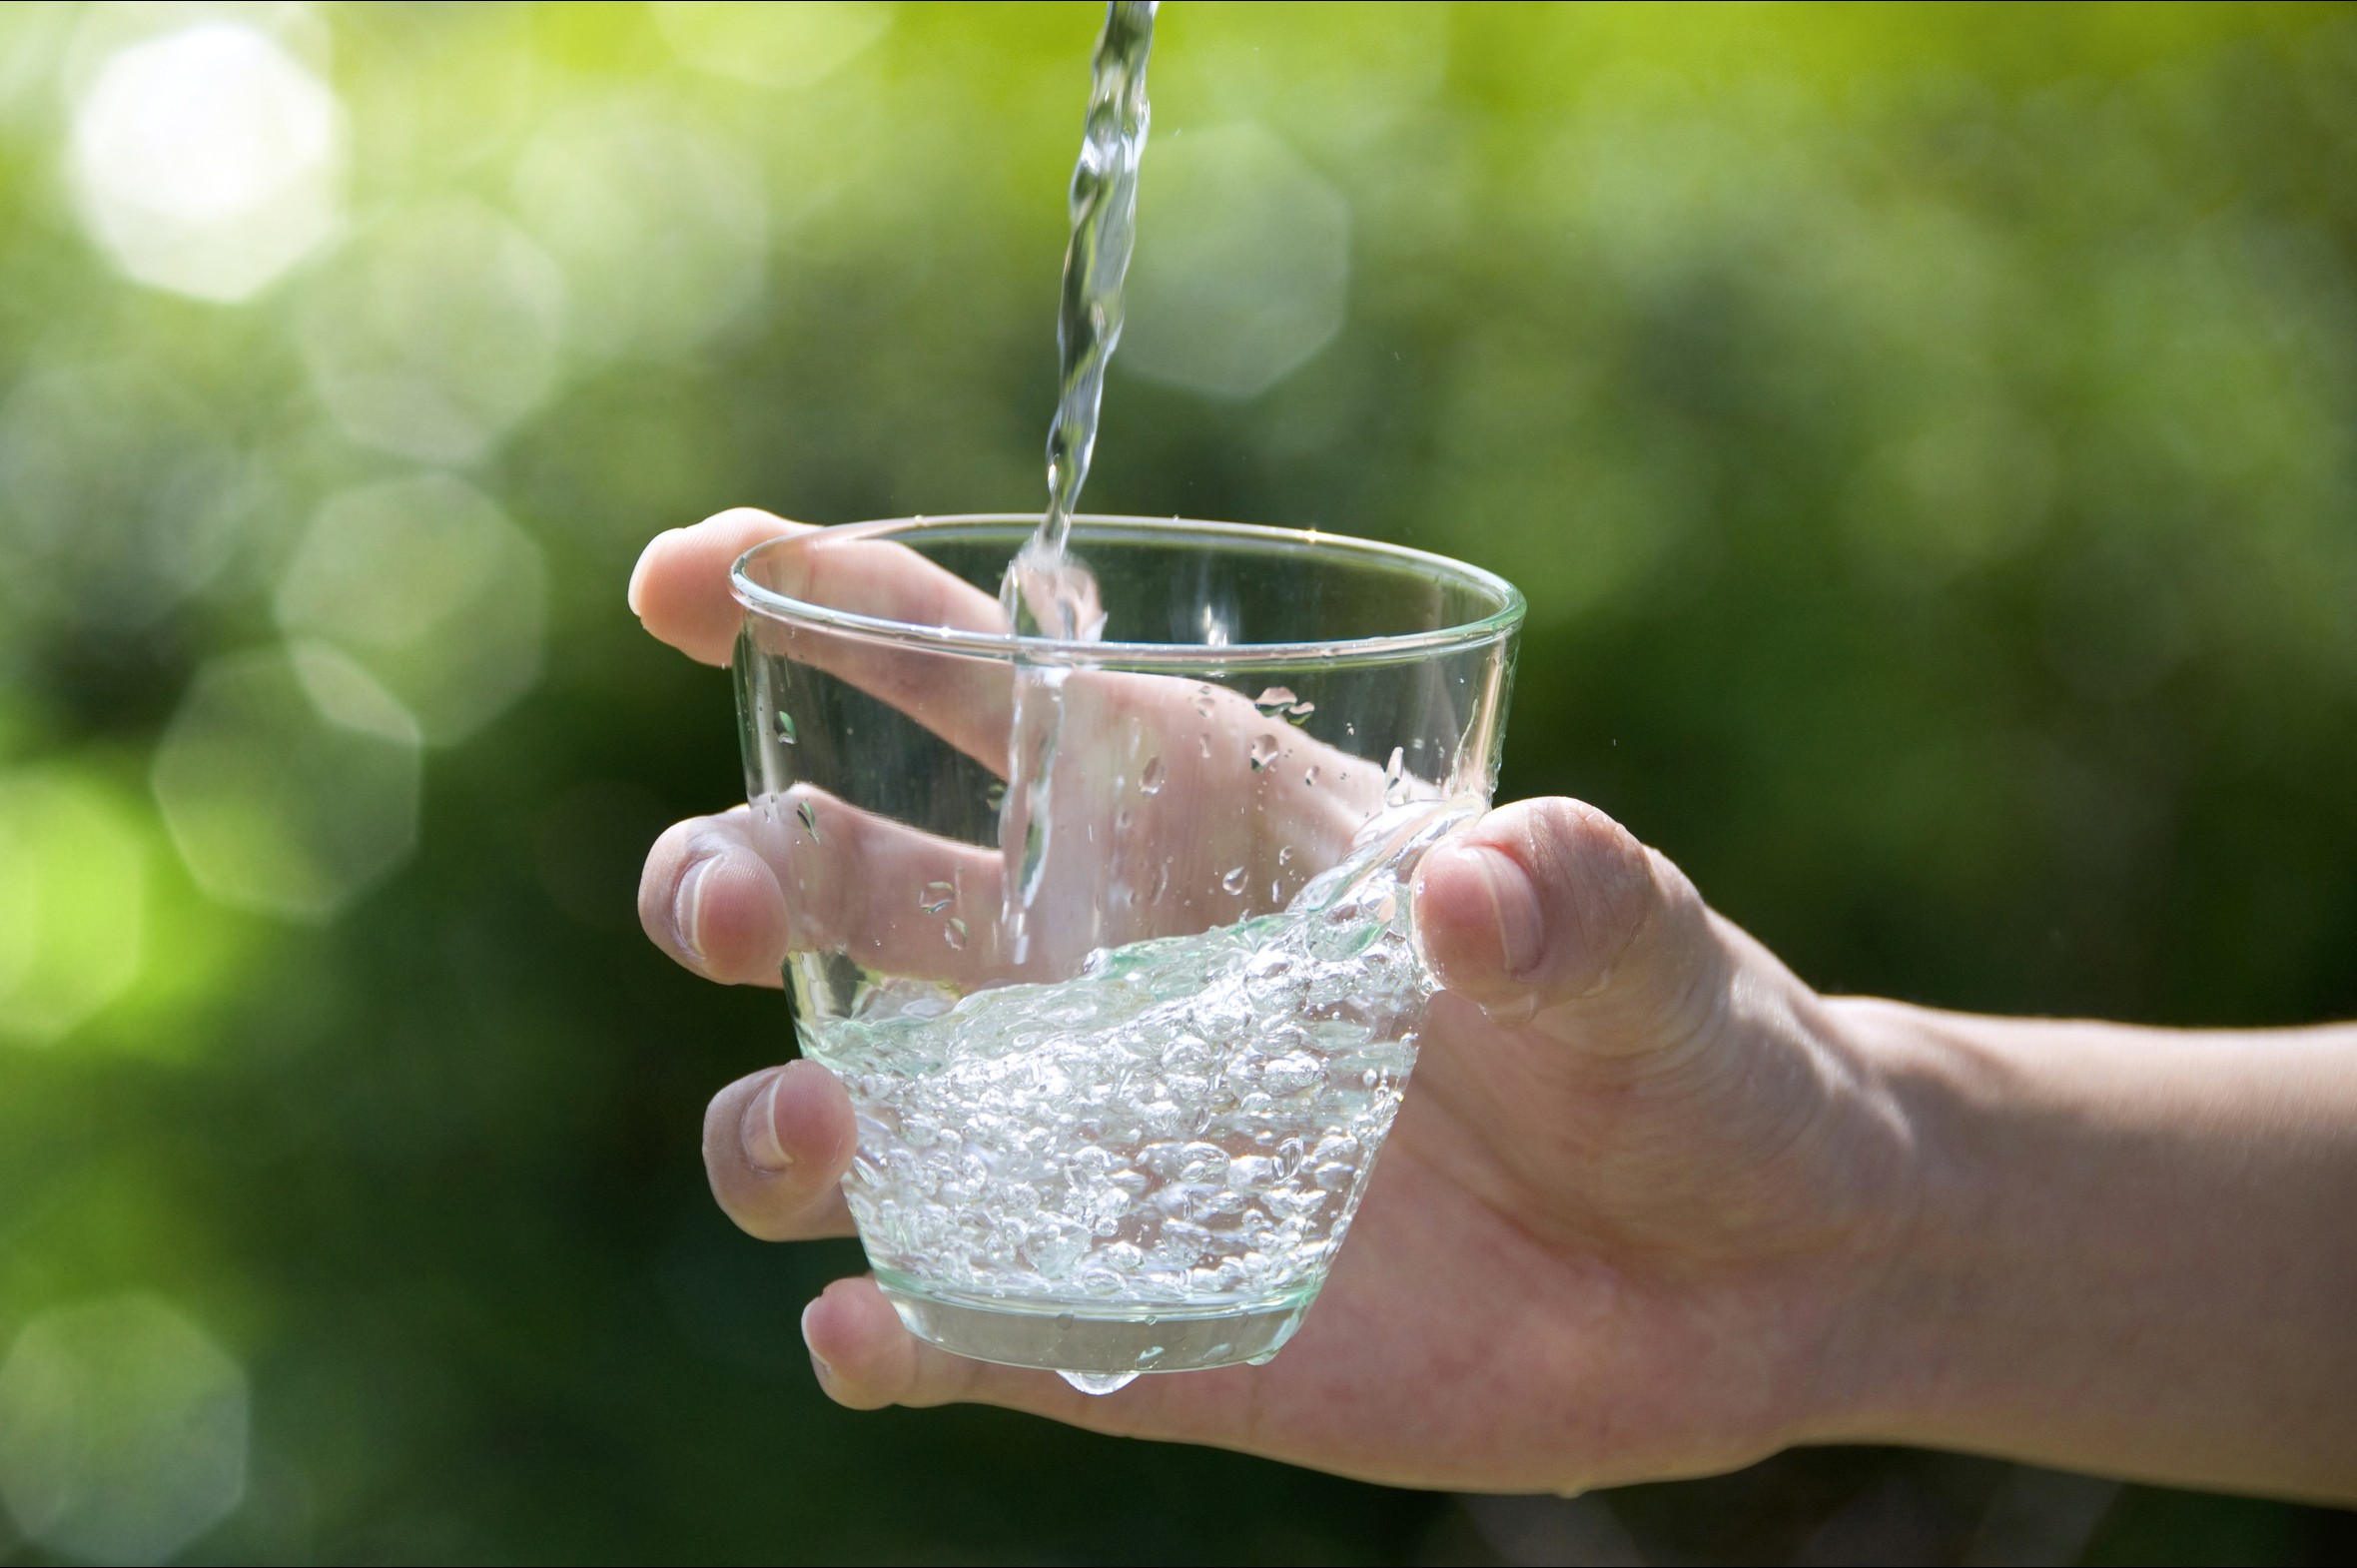 Чистая вода для хворобы беда что значит